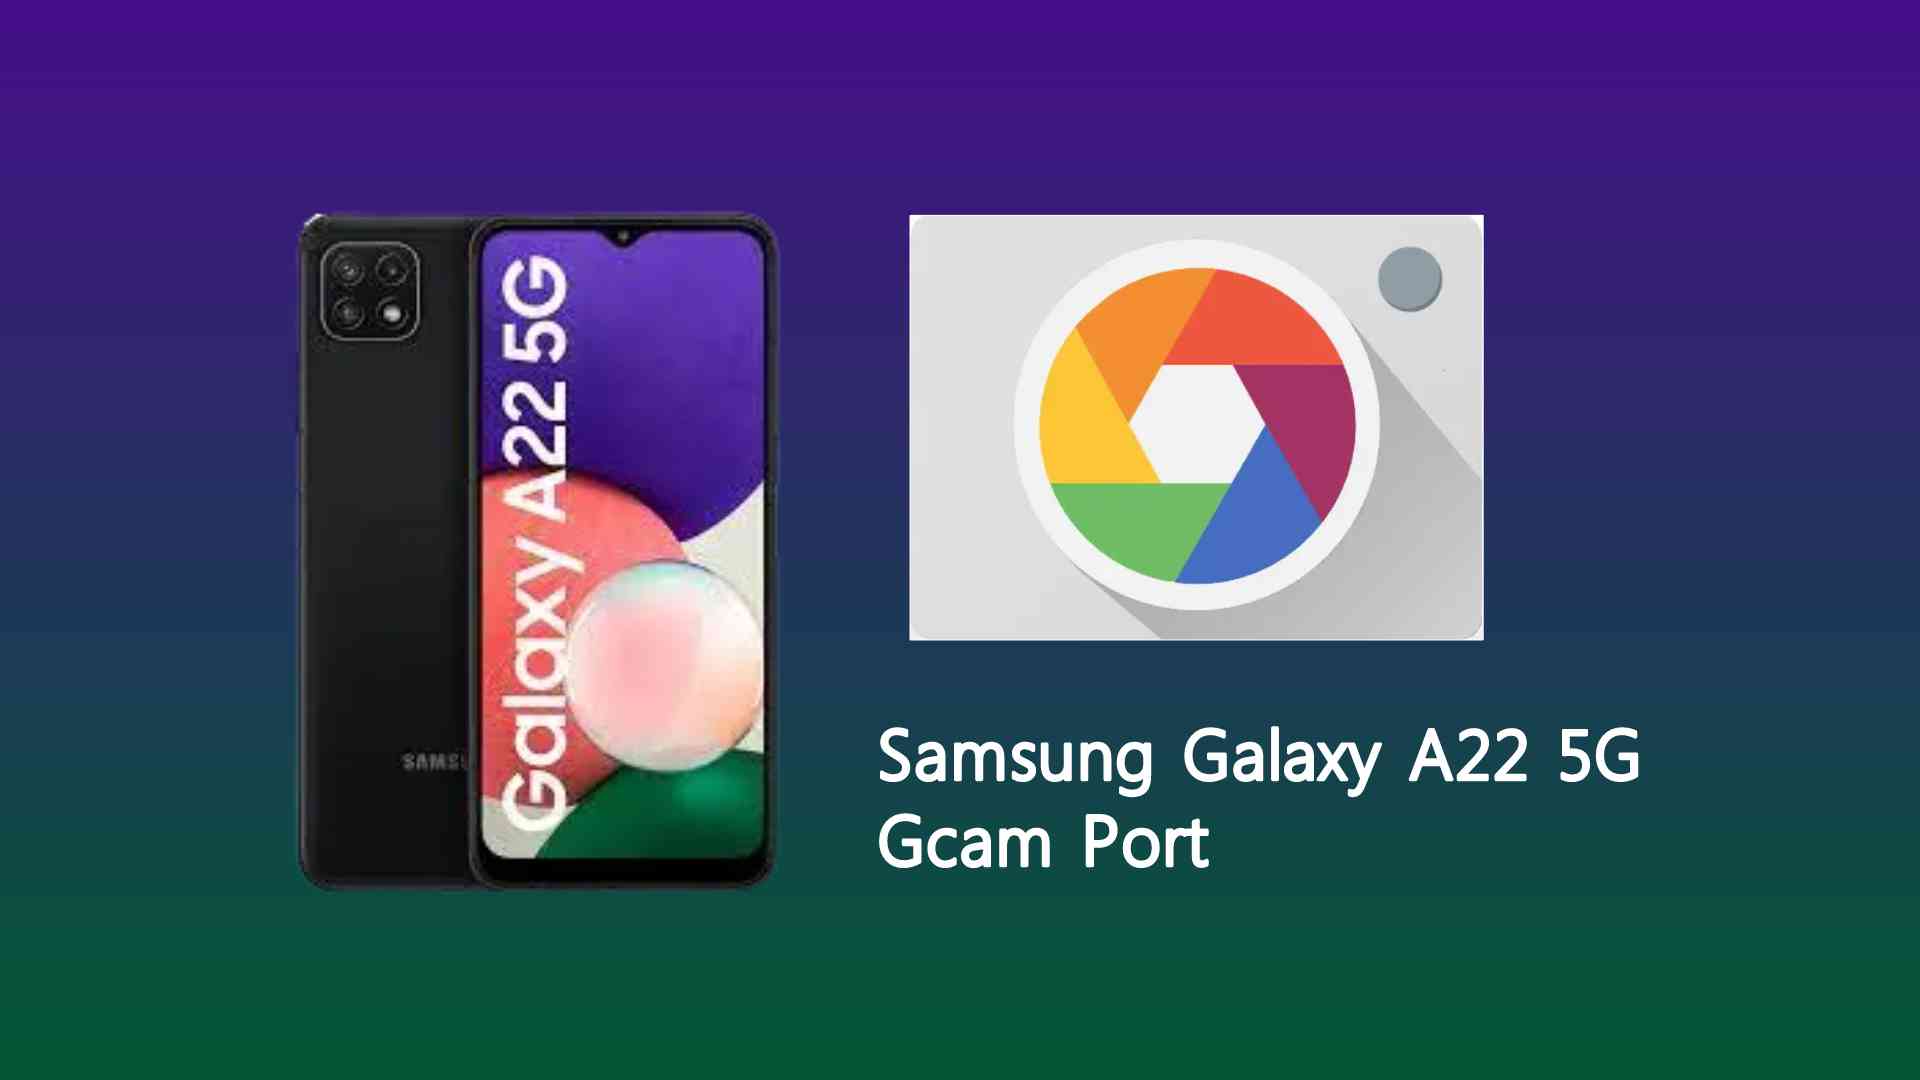 Samsung Galaxy A22 5G Gcam Port